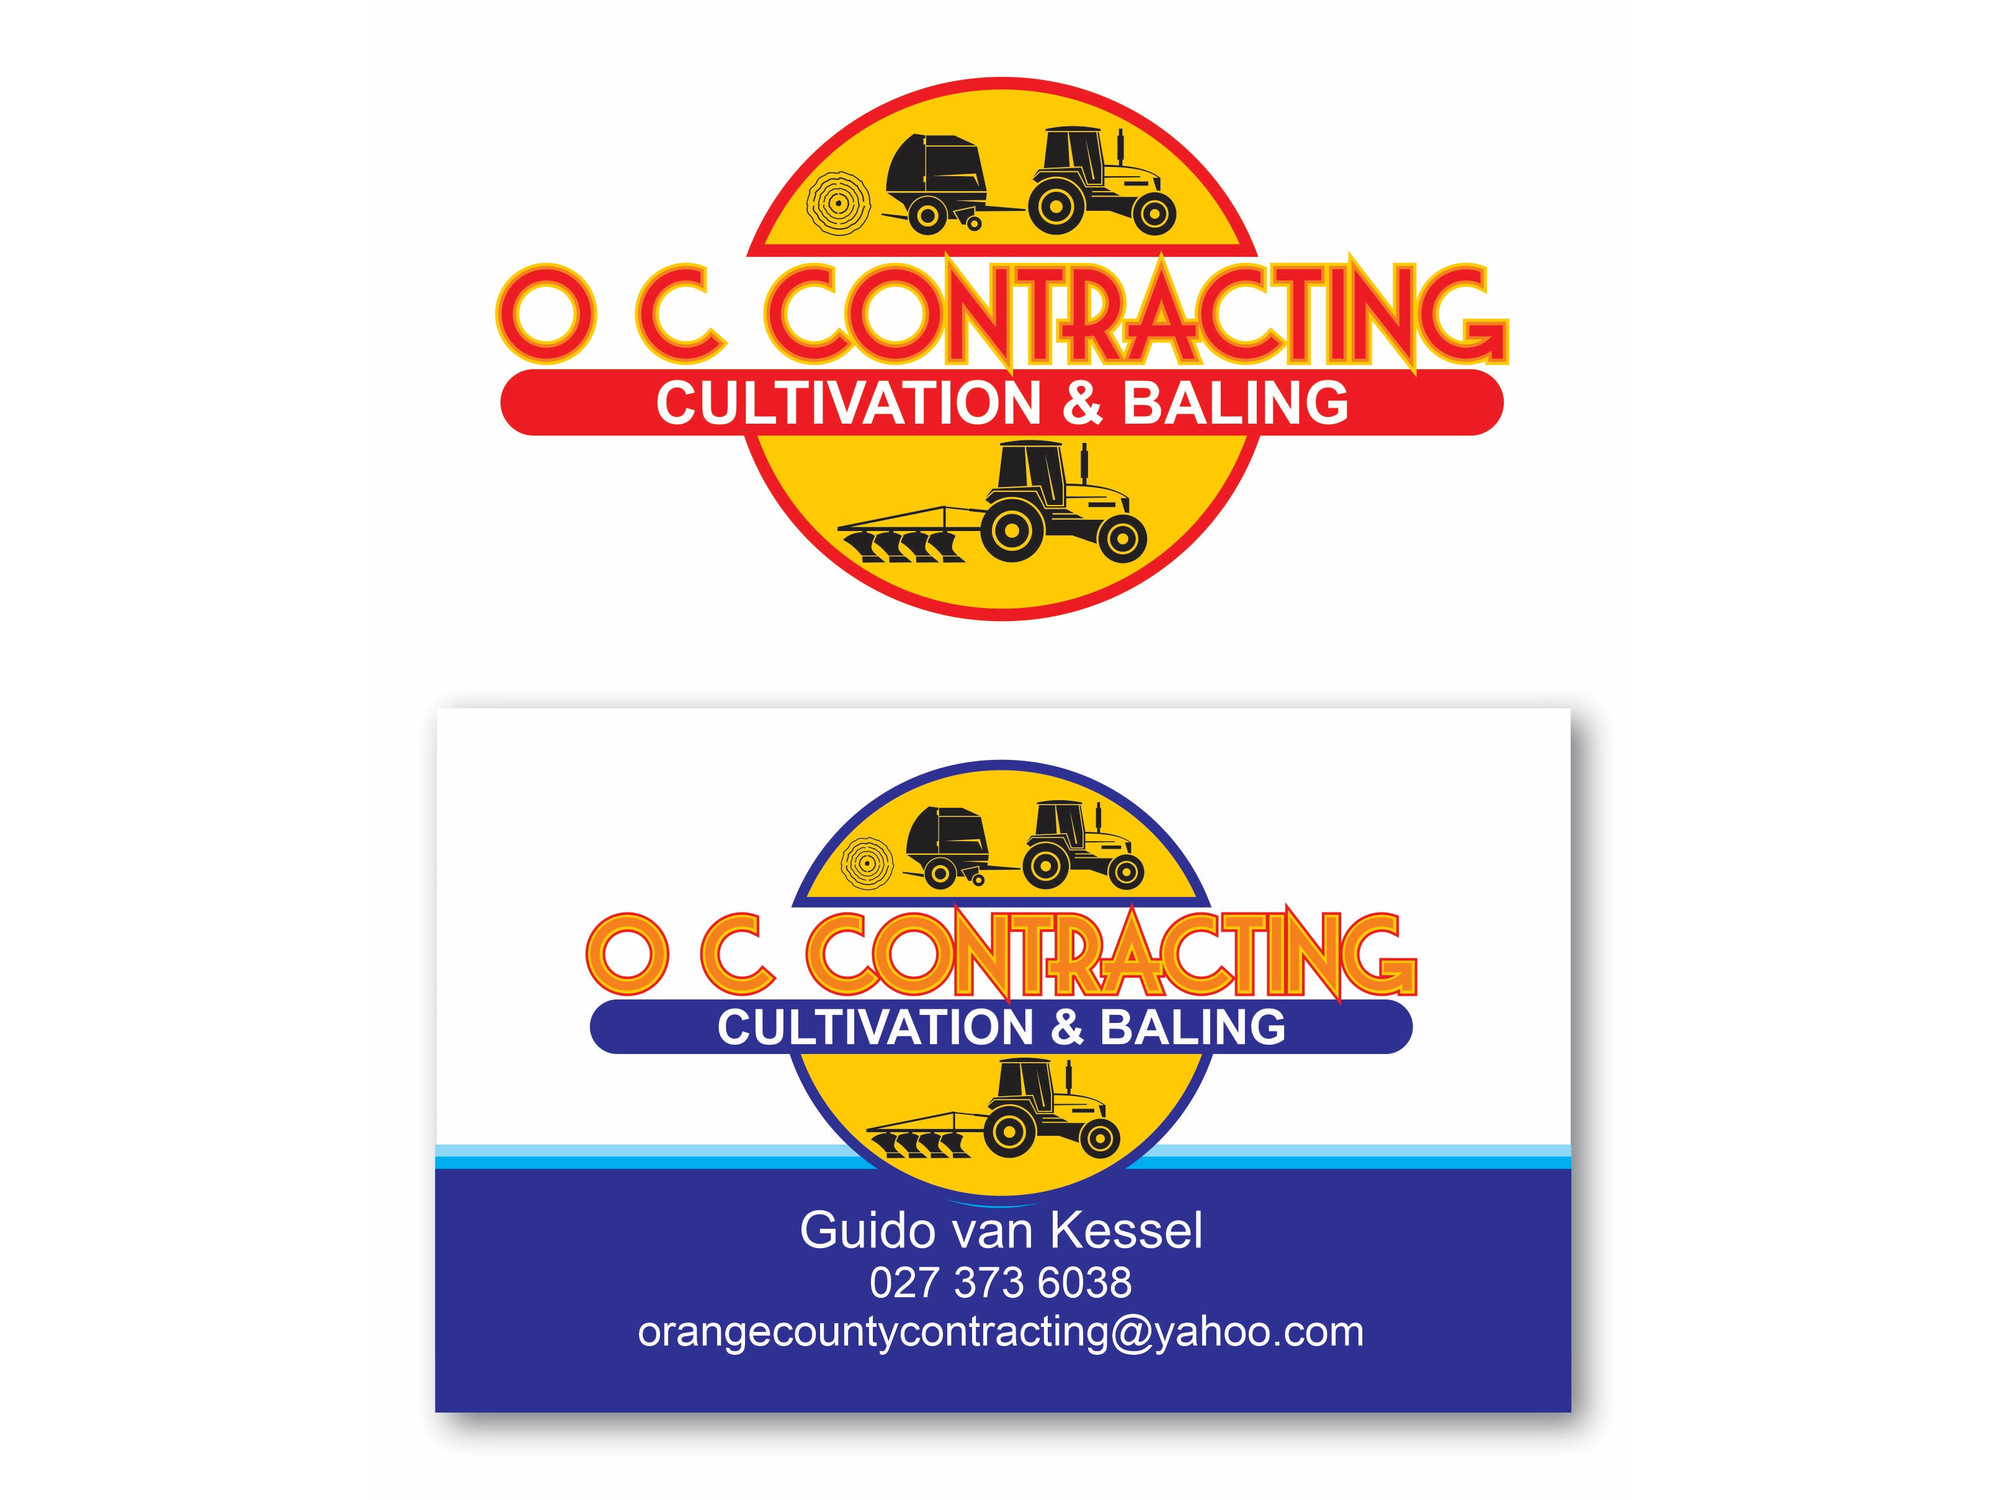 Logo Design O C Contracting